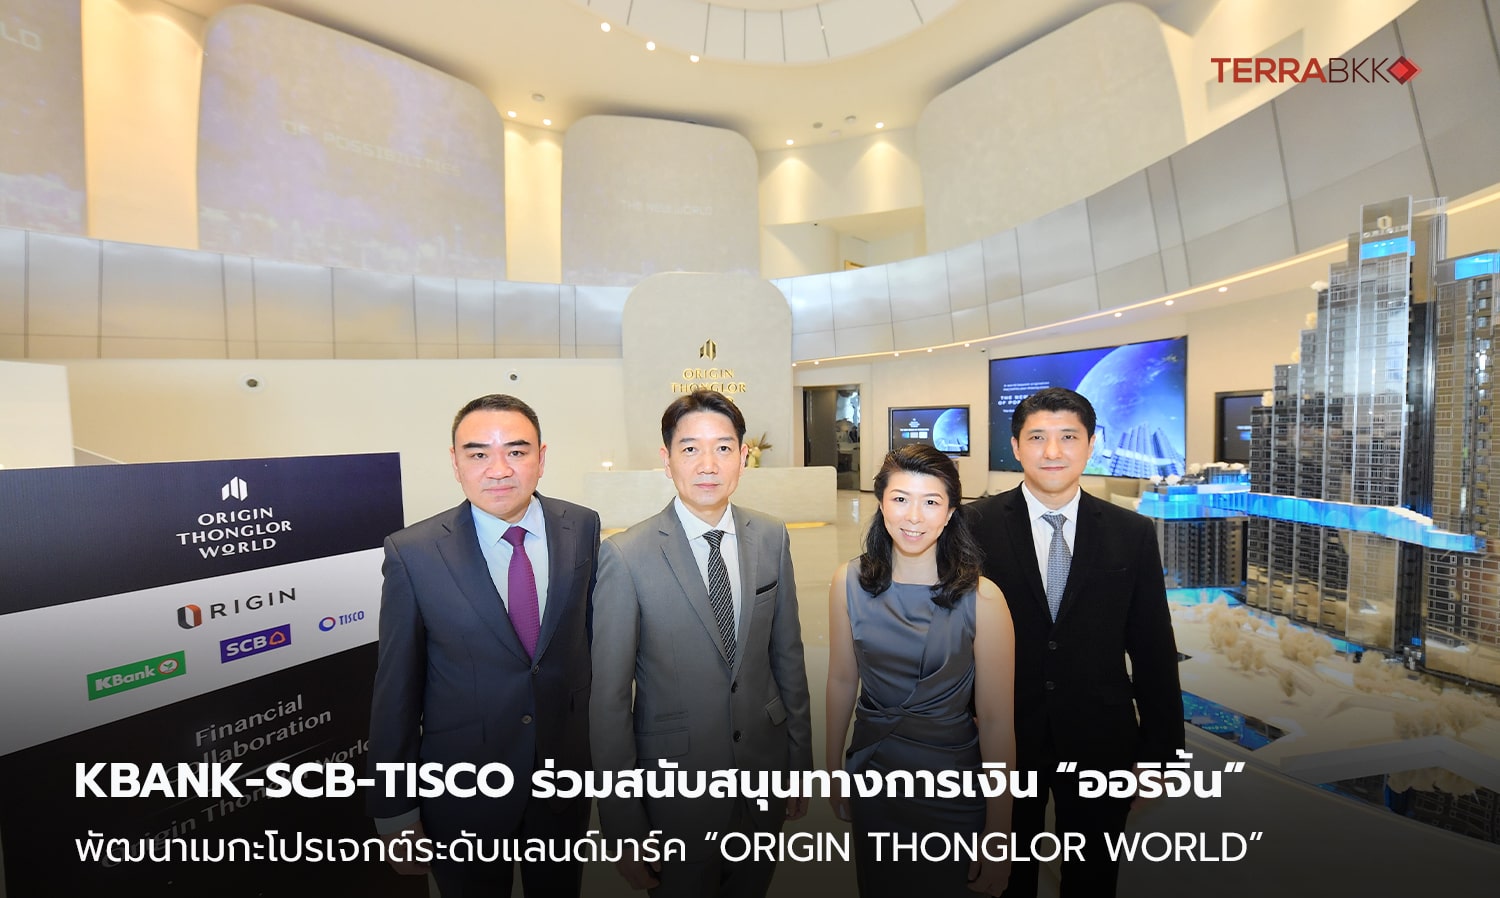 KBank-SCB-TISCO ร่วมสนับสนุนทางการเงิน “ออริจิ้น”   พัฒนาเมกะโปรเจกต์ระดับแลนด์มาร์ค “Origin Thonglor World”